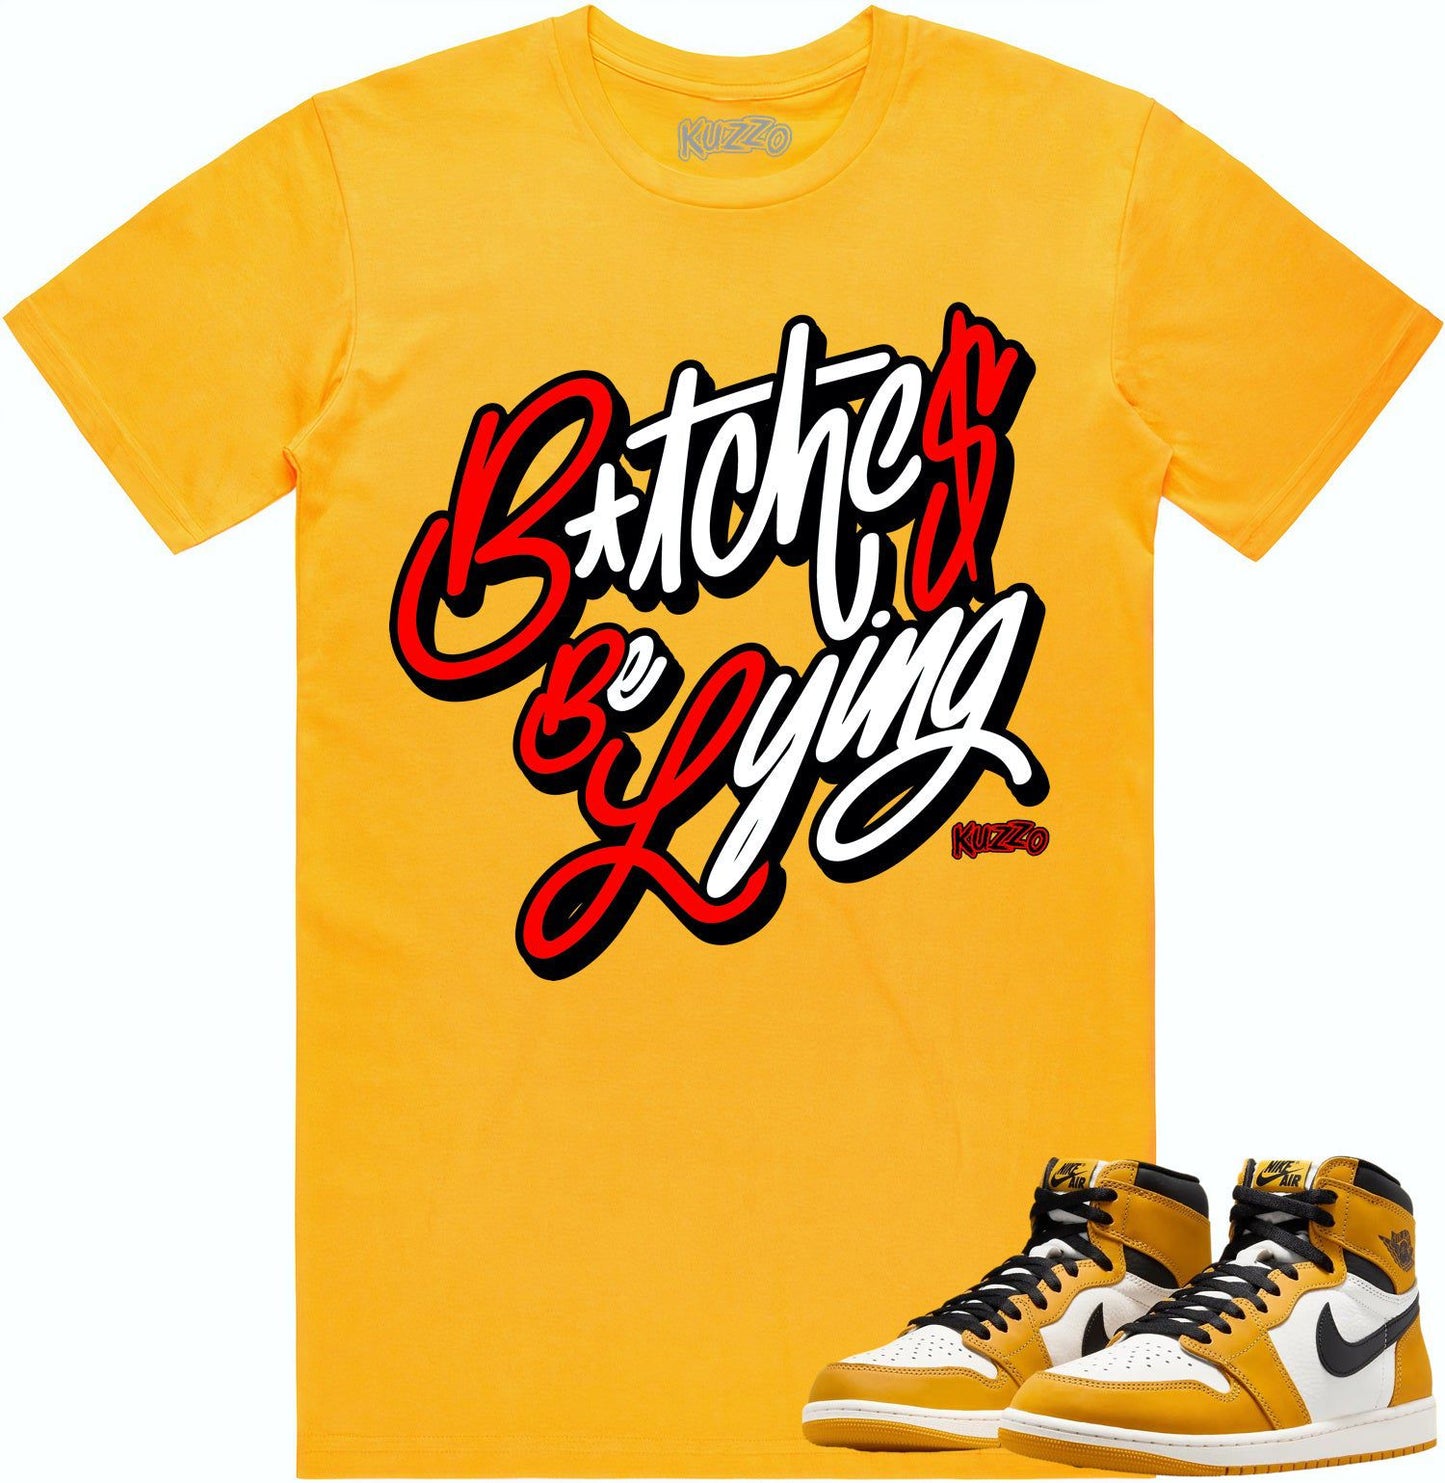 Yellow Ochre 1s Shirt - Jordan 1 Ochre Sneaker Tees - Red BBL